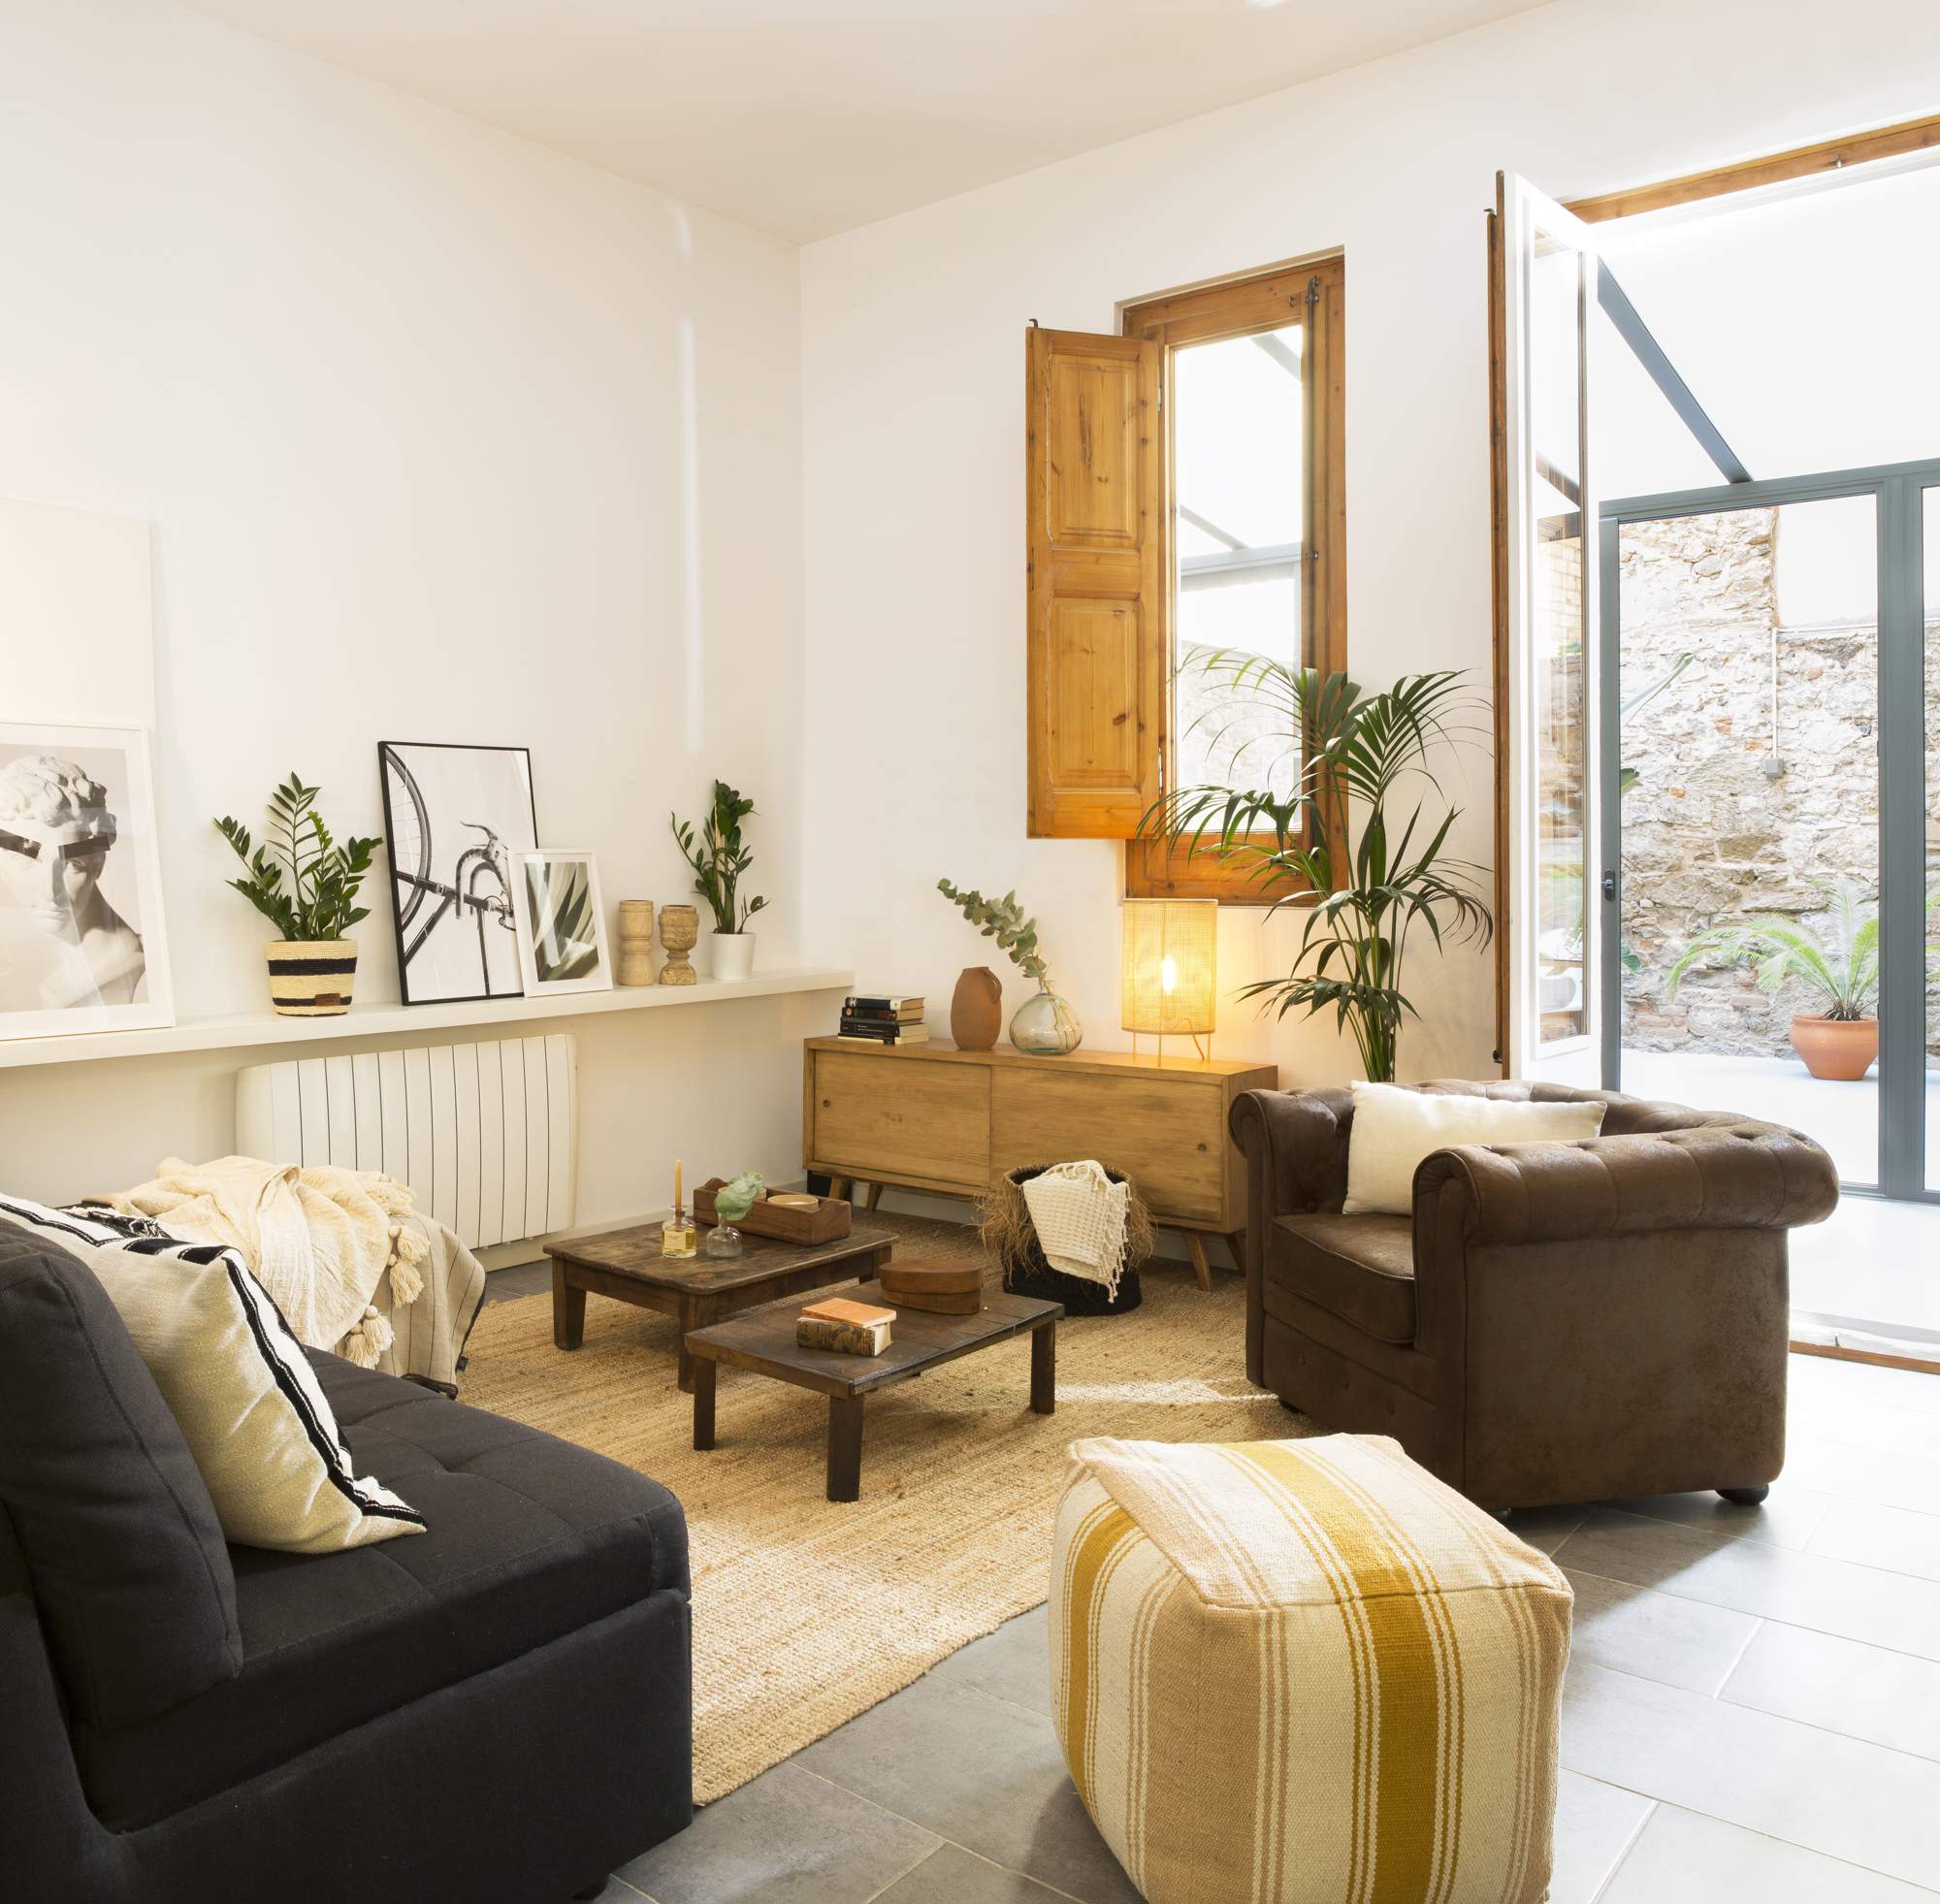 Un salón con muebles bajos, sencillos y sofás confortables.